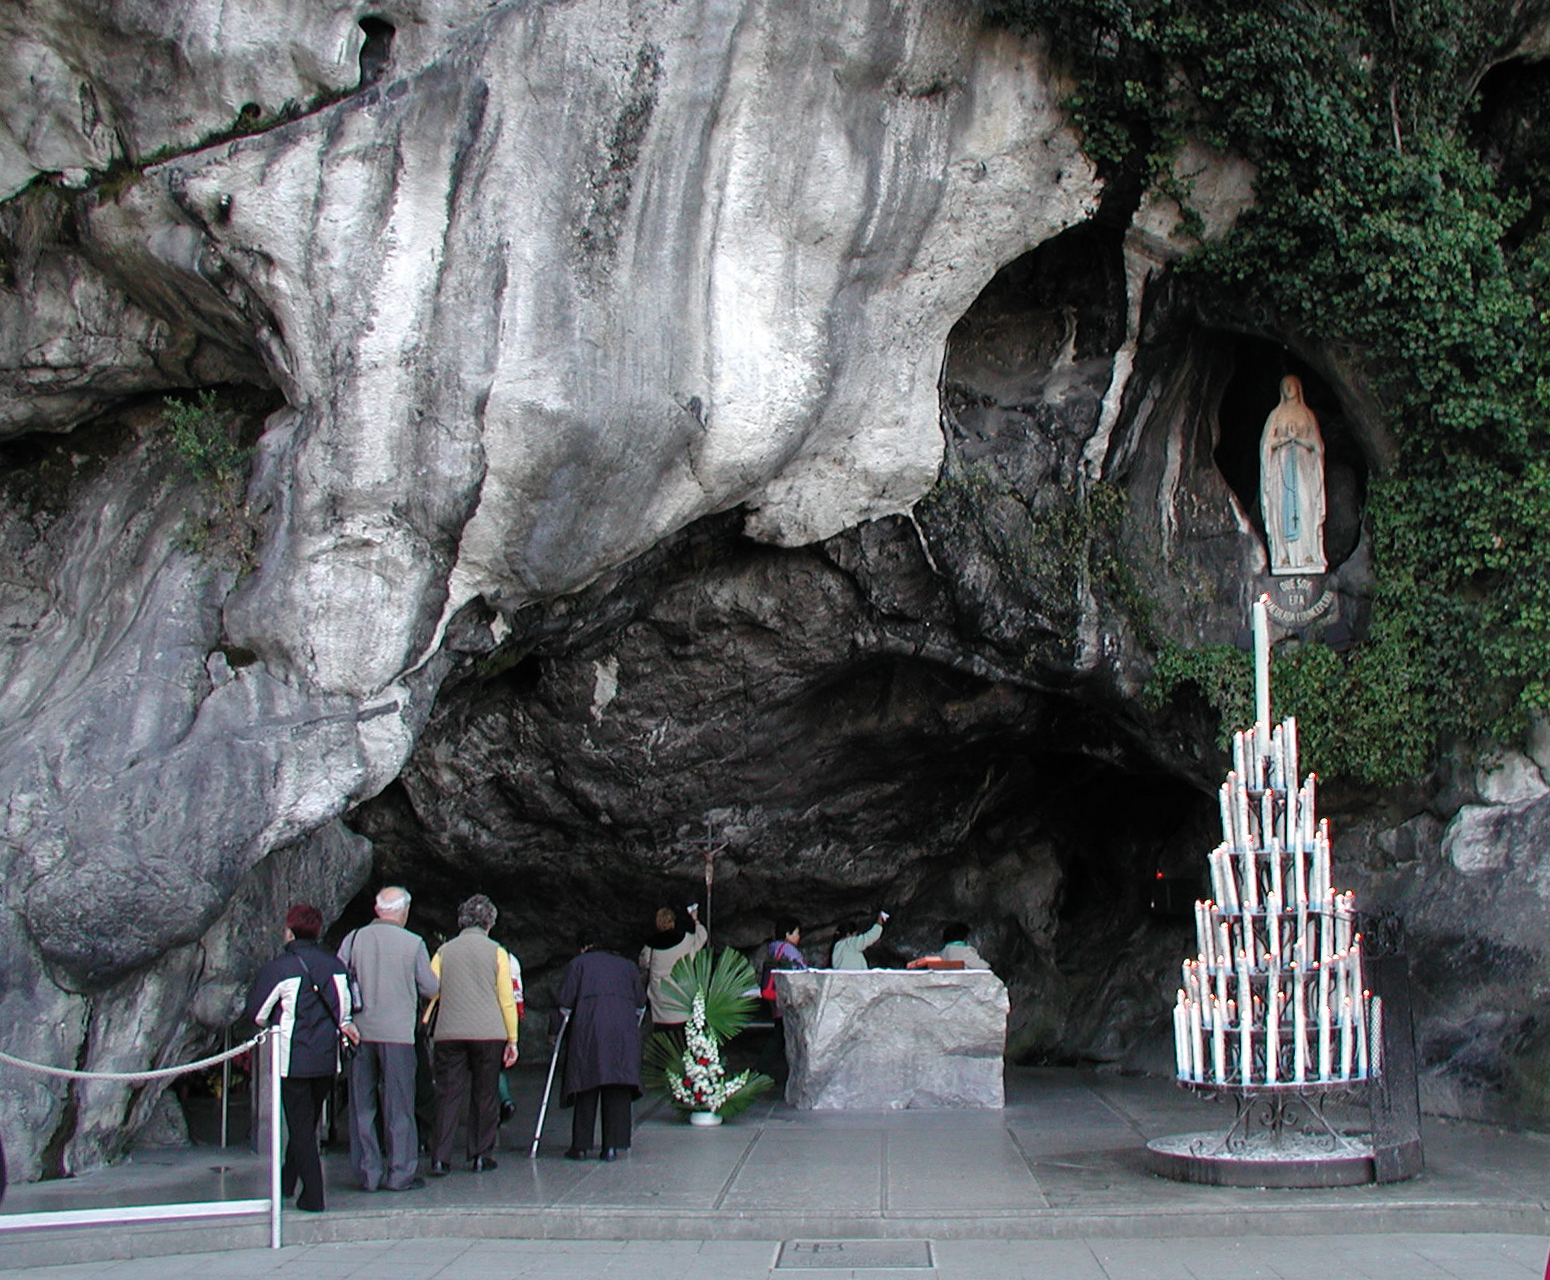 Grotte de Massabielle, Lourdes, Midi-Pyrenees, France - Heroes Of Adventure